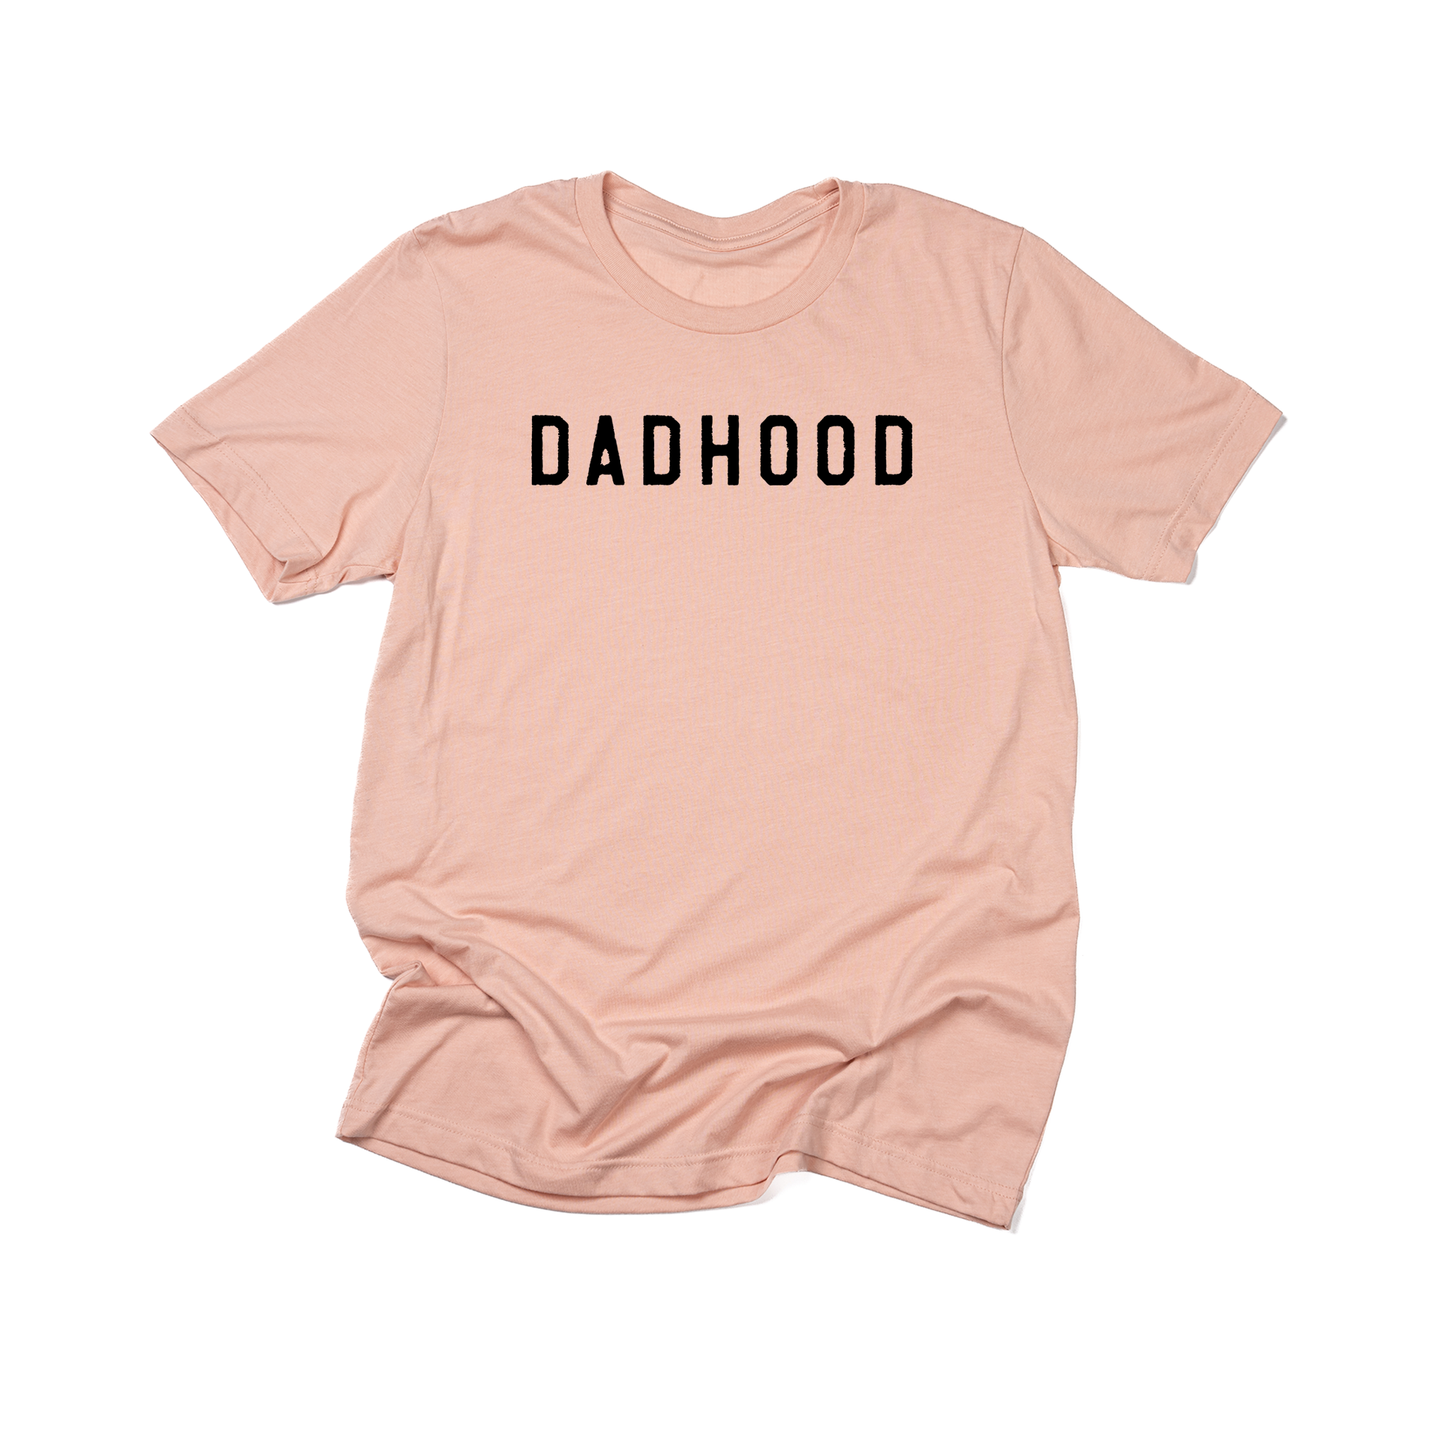 Dadhood (Rough, Black) - Tee (Peach)